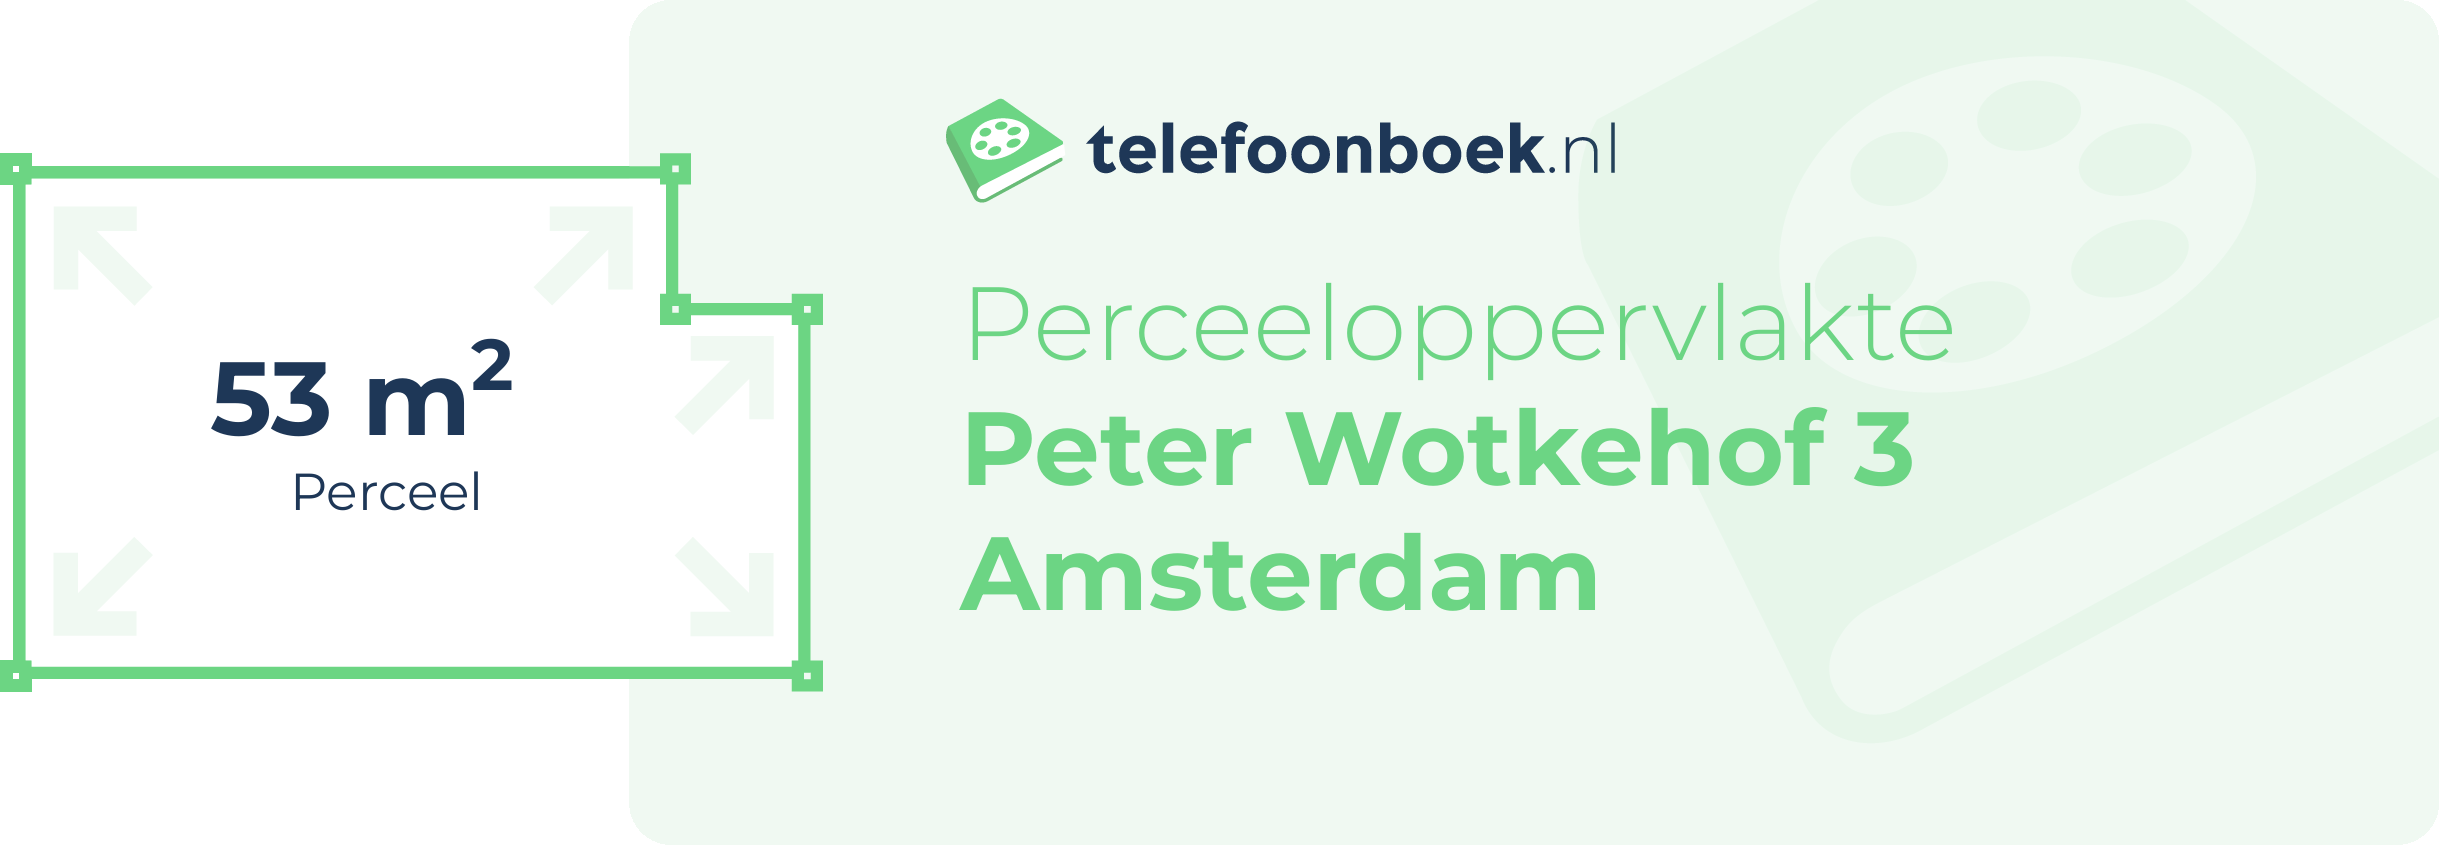 Perceeloppervlakte Peter Wotkehof 3 Amsterdam